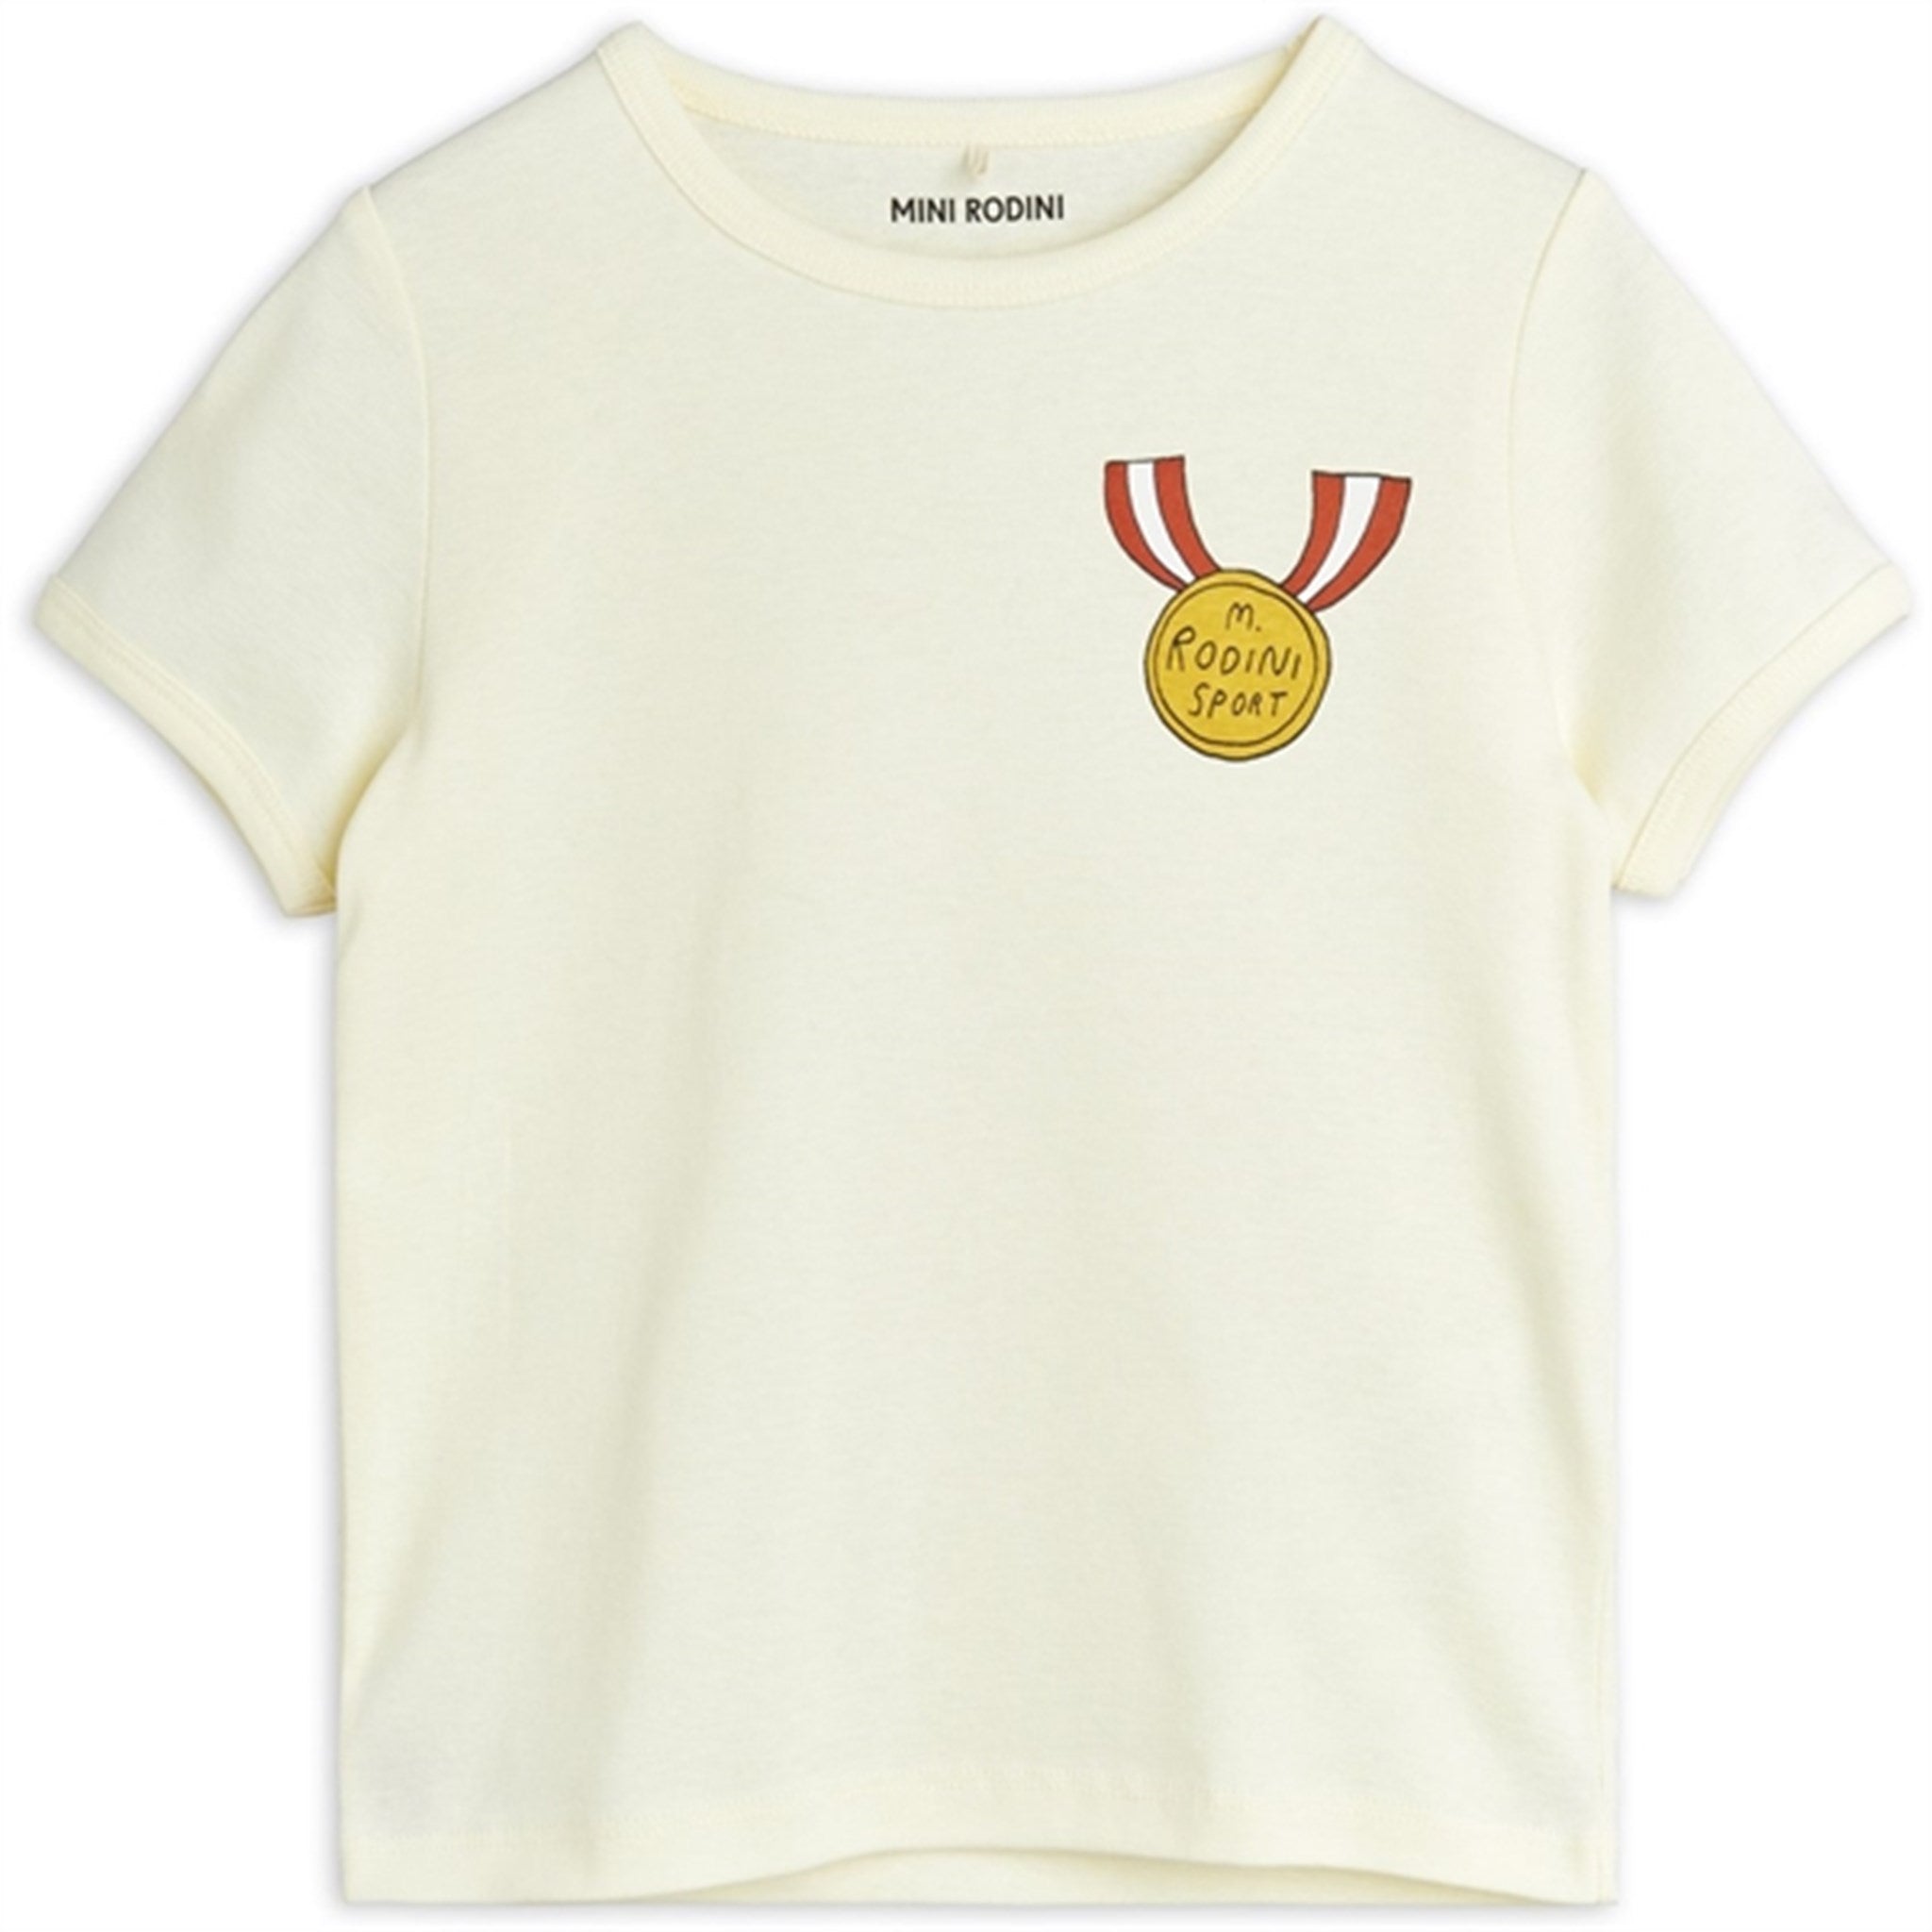 Mini Rodini White Medal Sp T-shirt